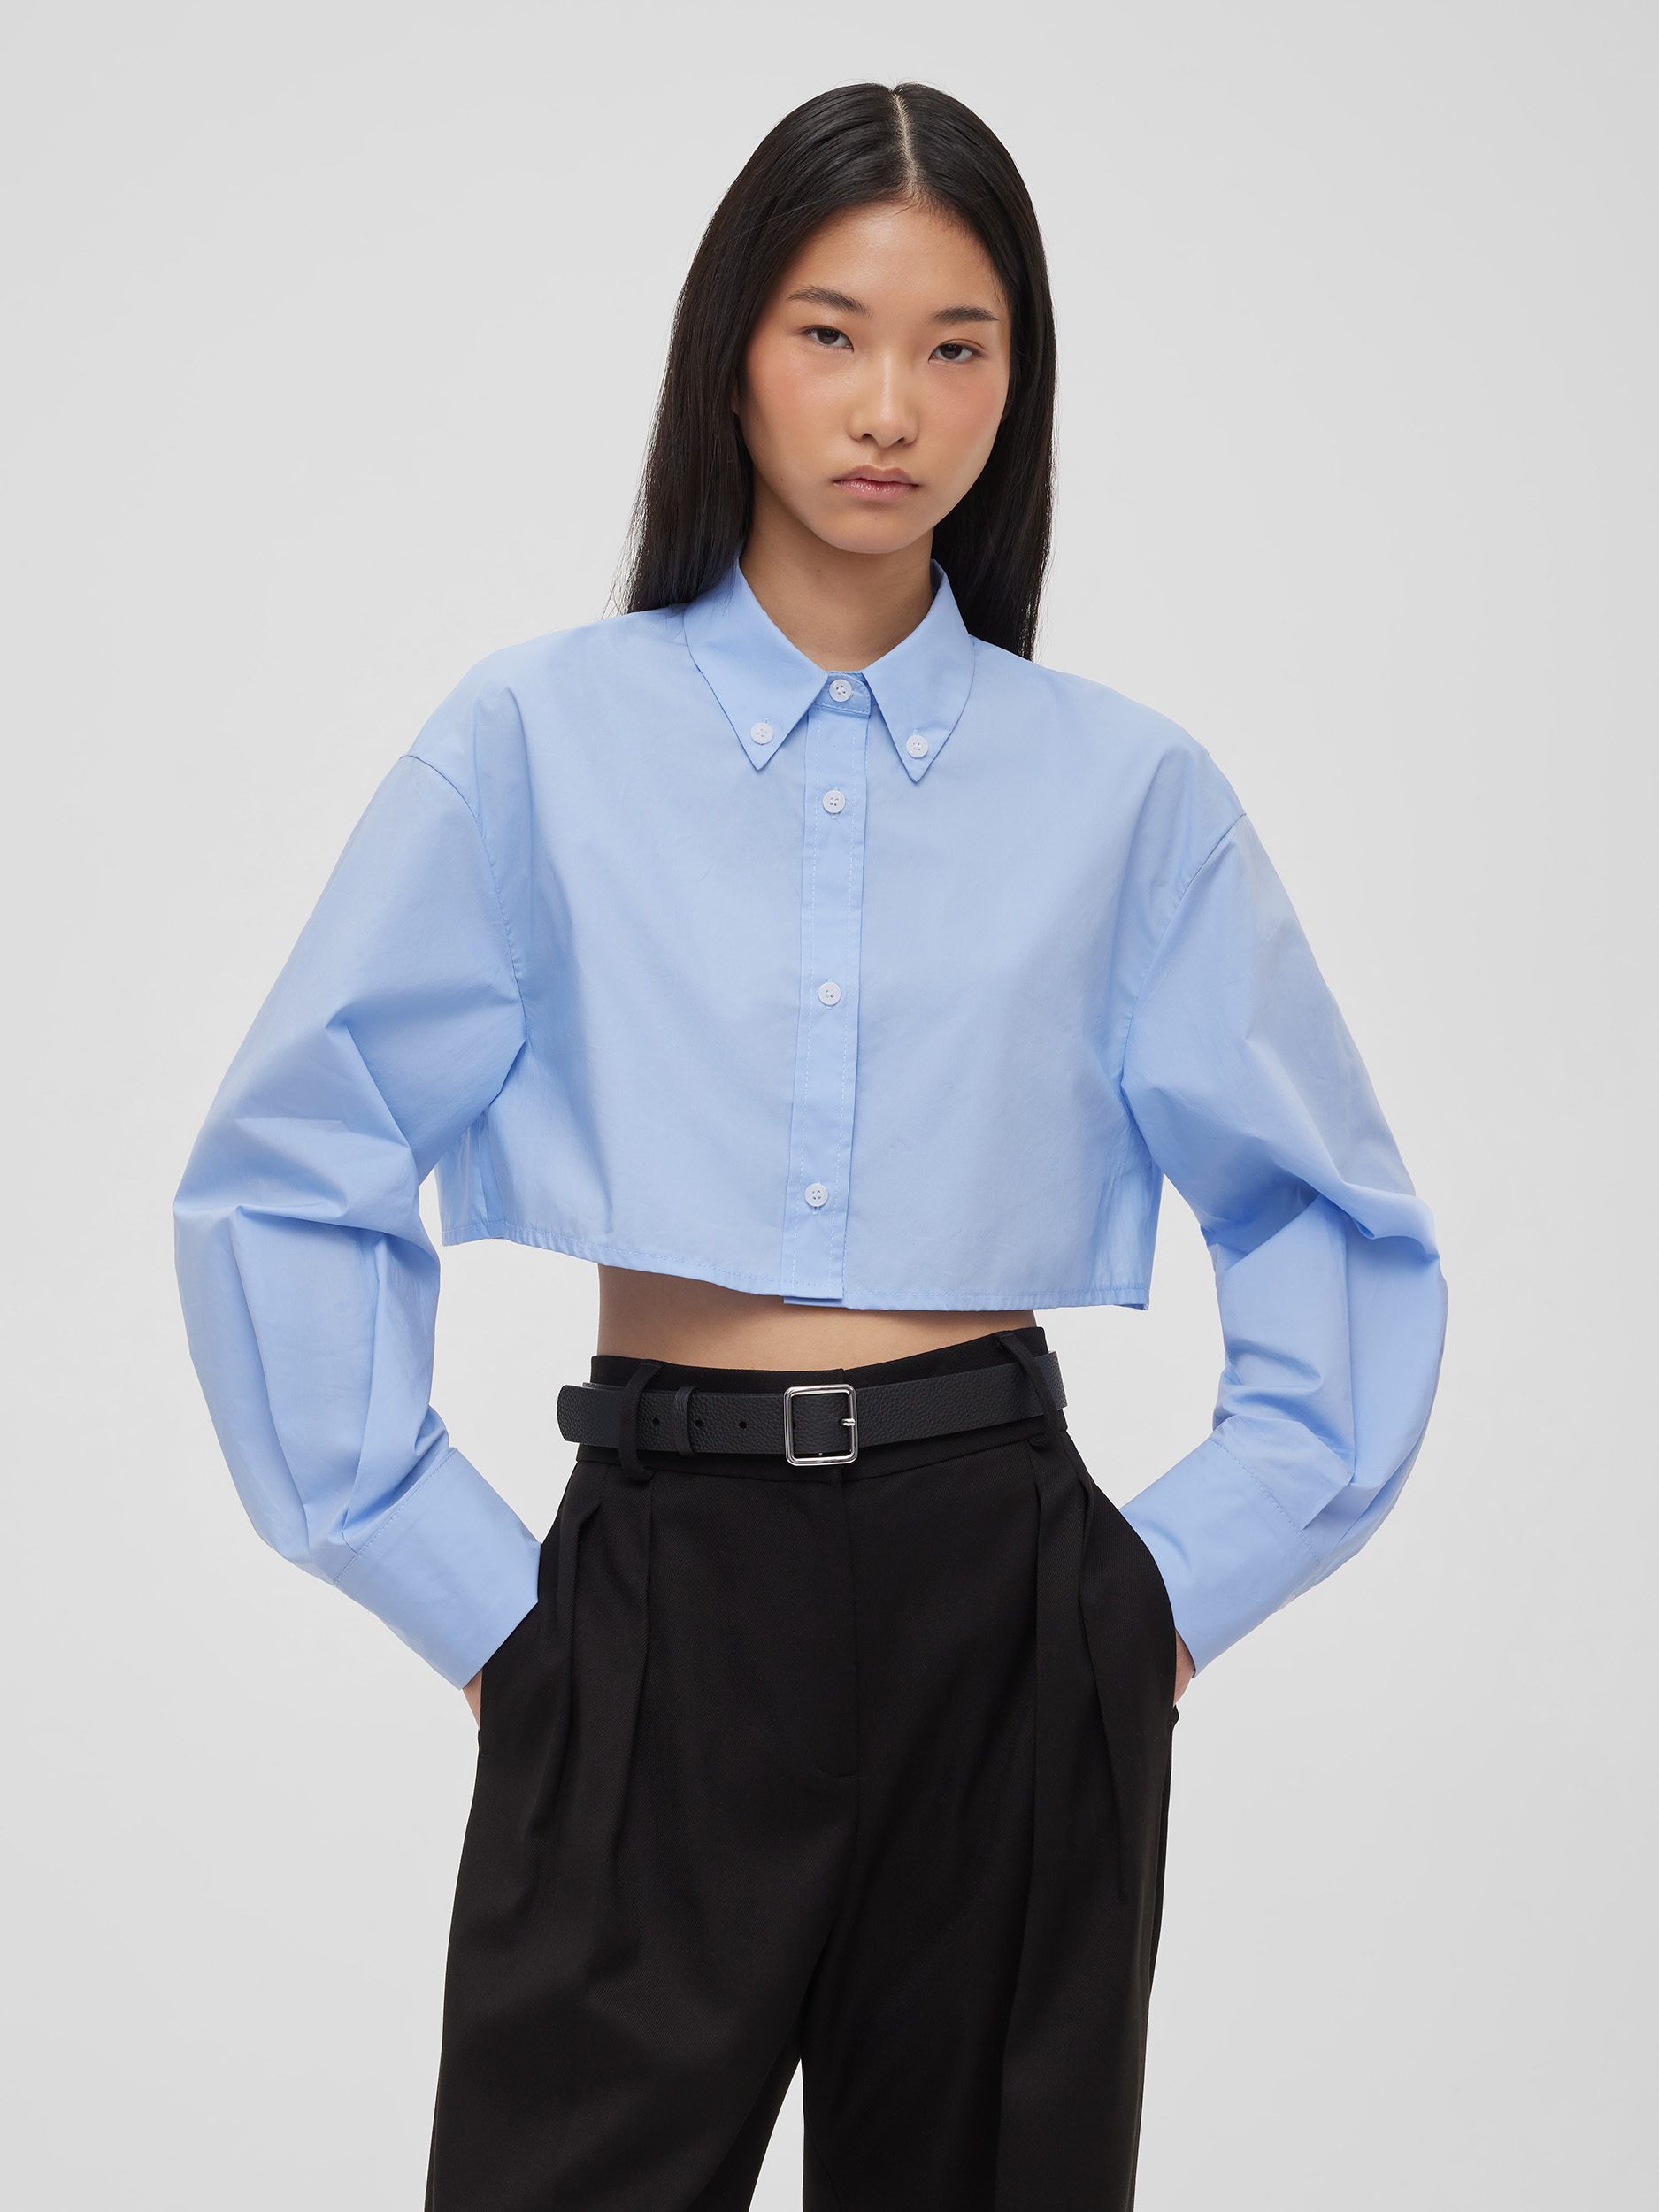 цена Рубашка женская короткая из хлопка, цвет – светло-голубой